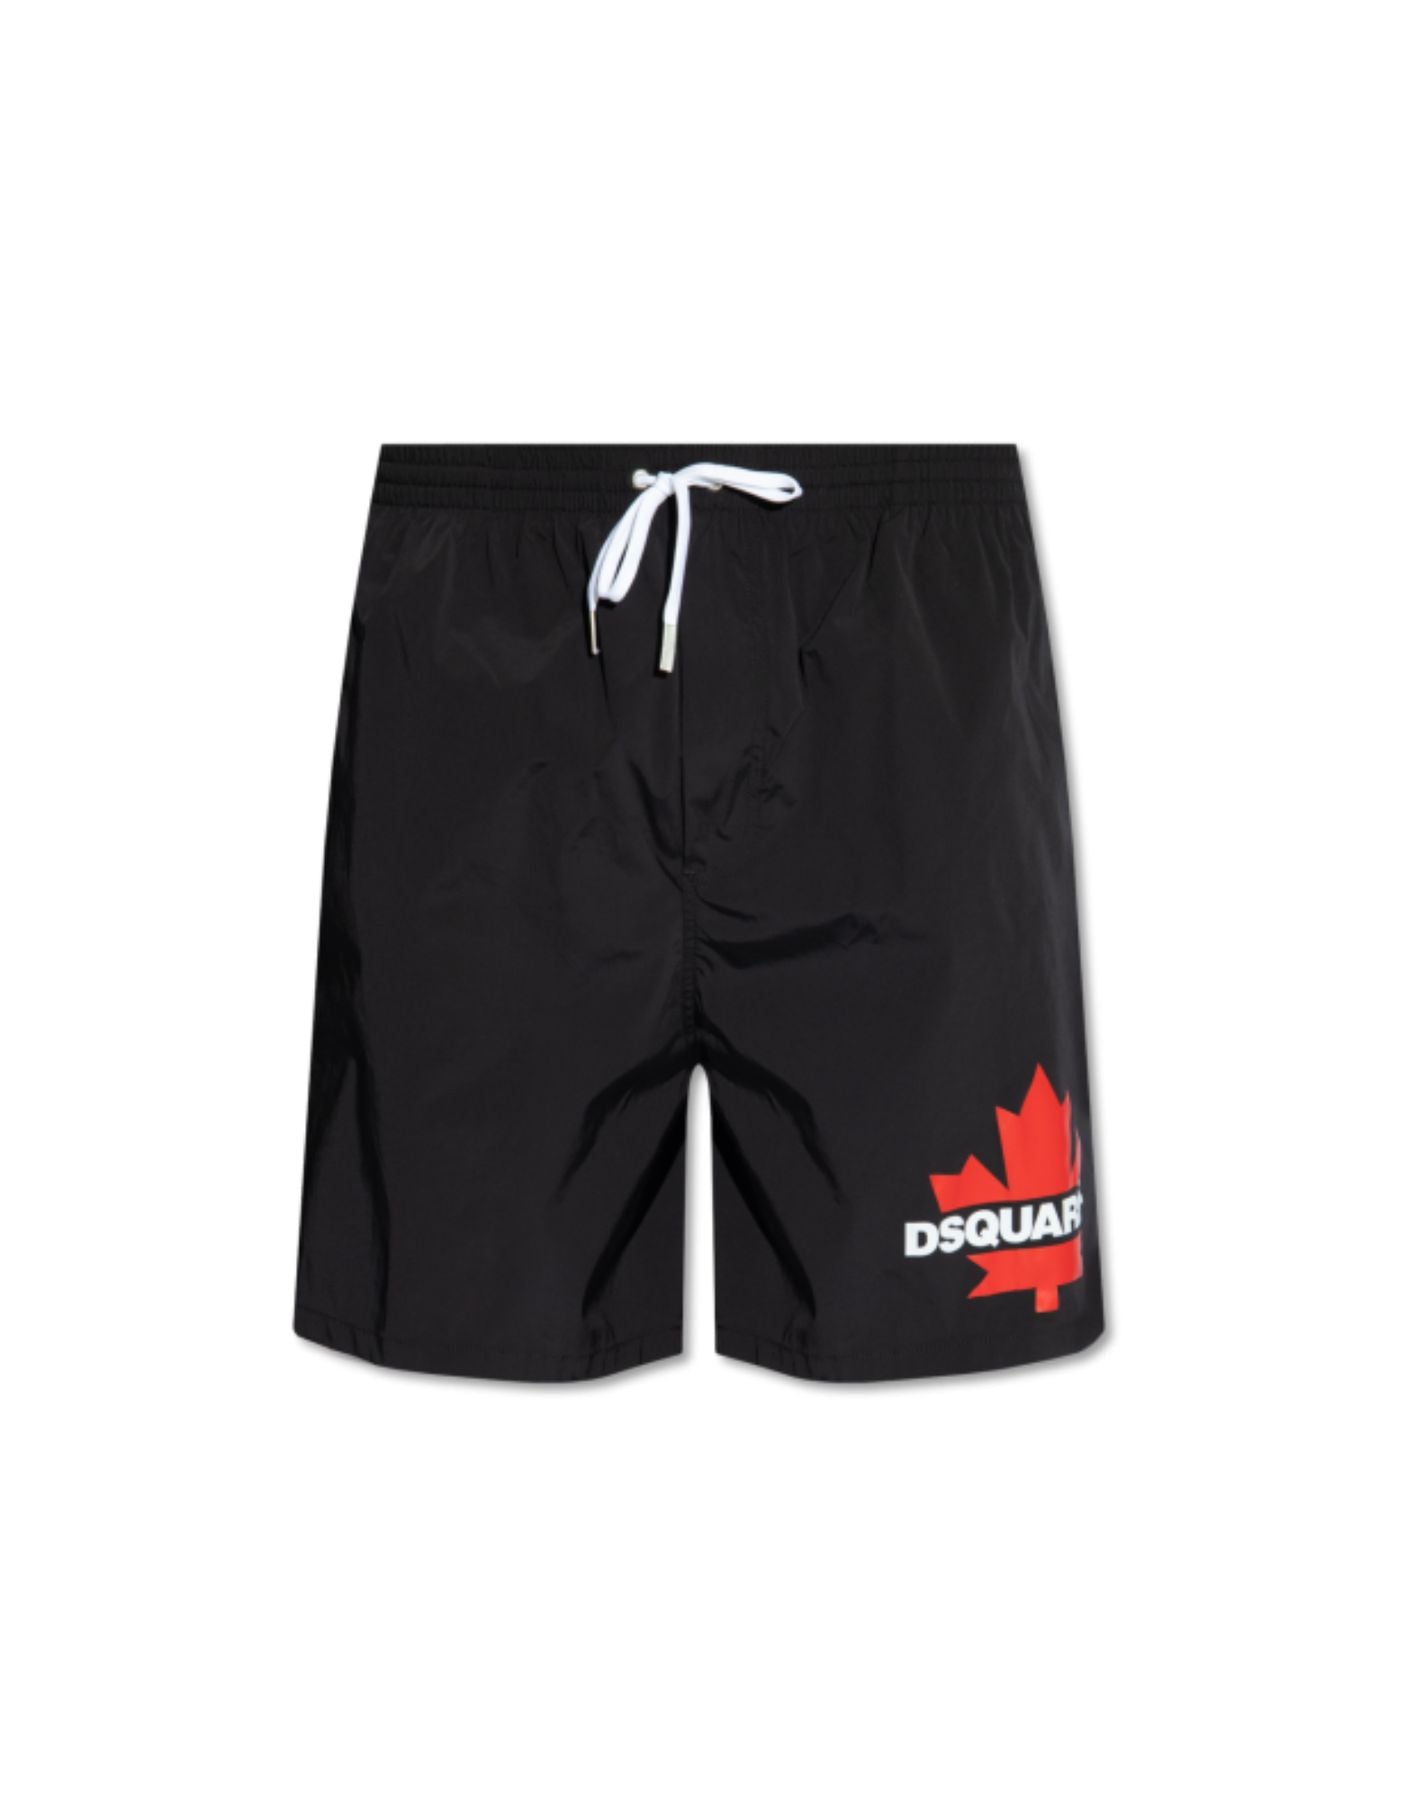 Swimwear for man D7BM15600 BLACK/RED DSQUARED2